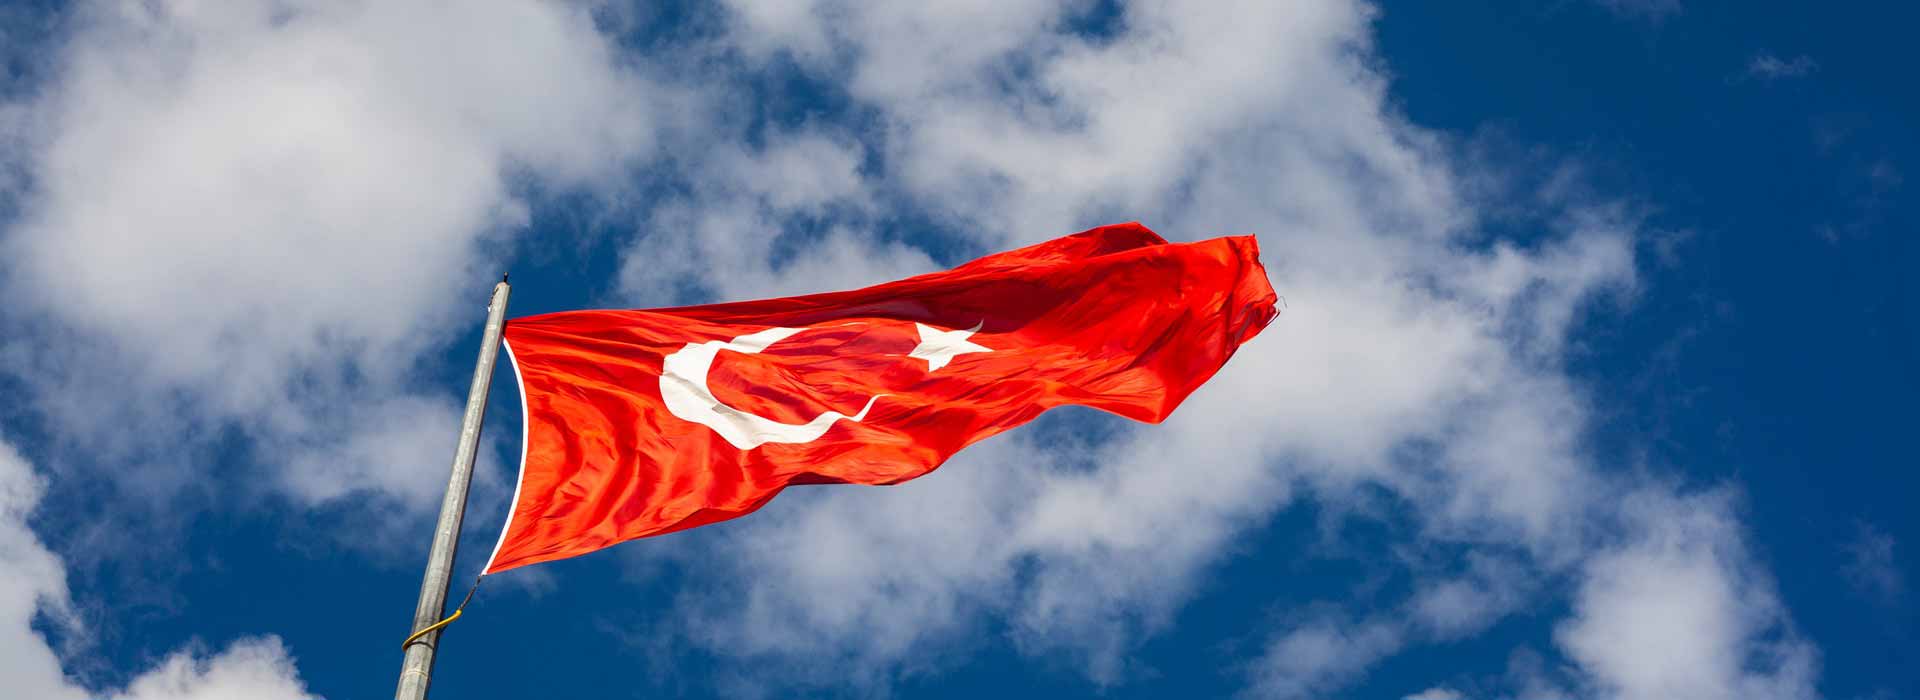 Turchia: I guadagni dall’export cesseranno nel 2020